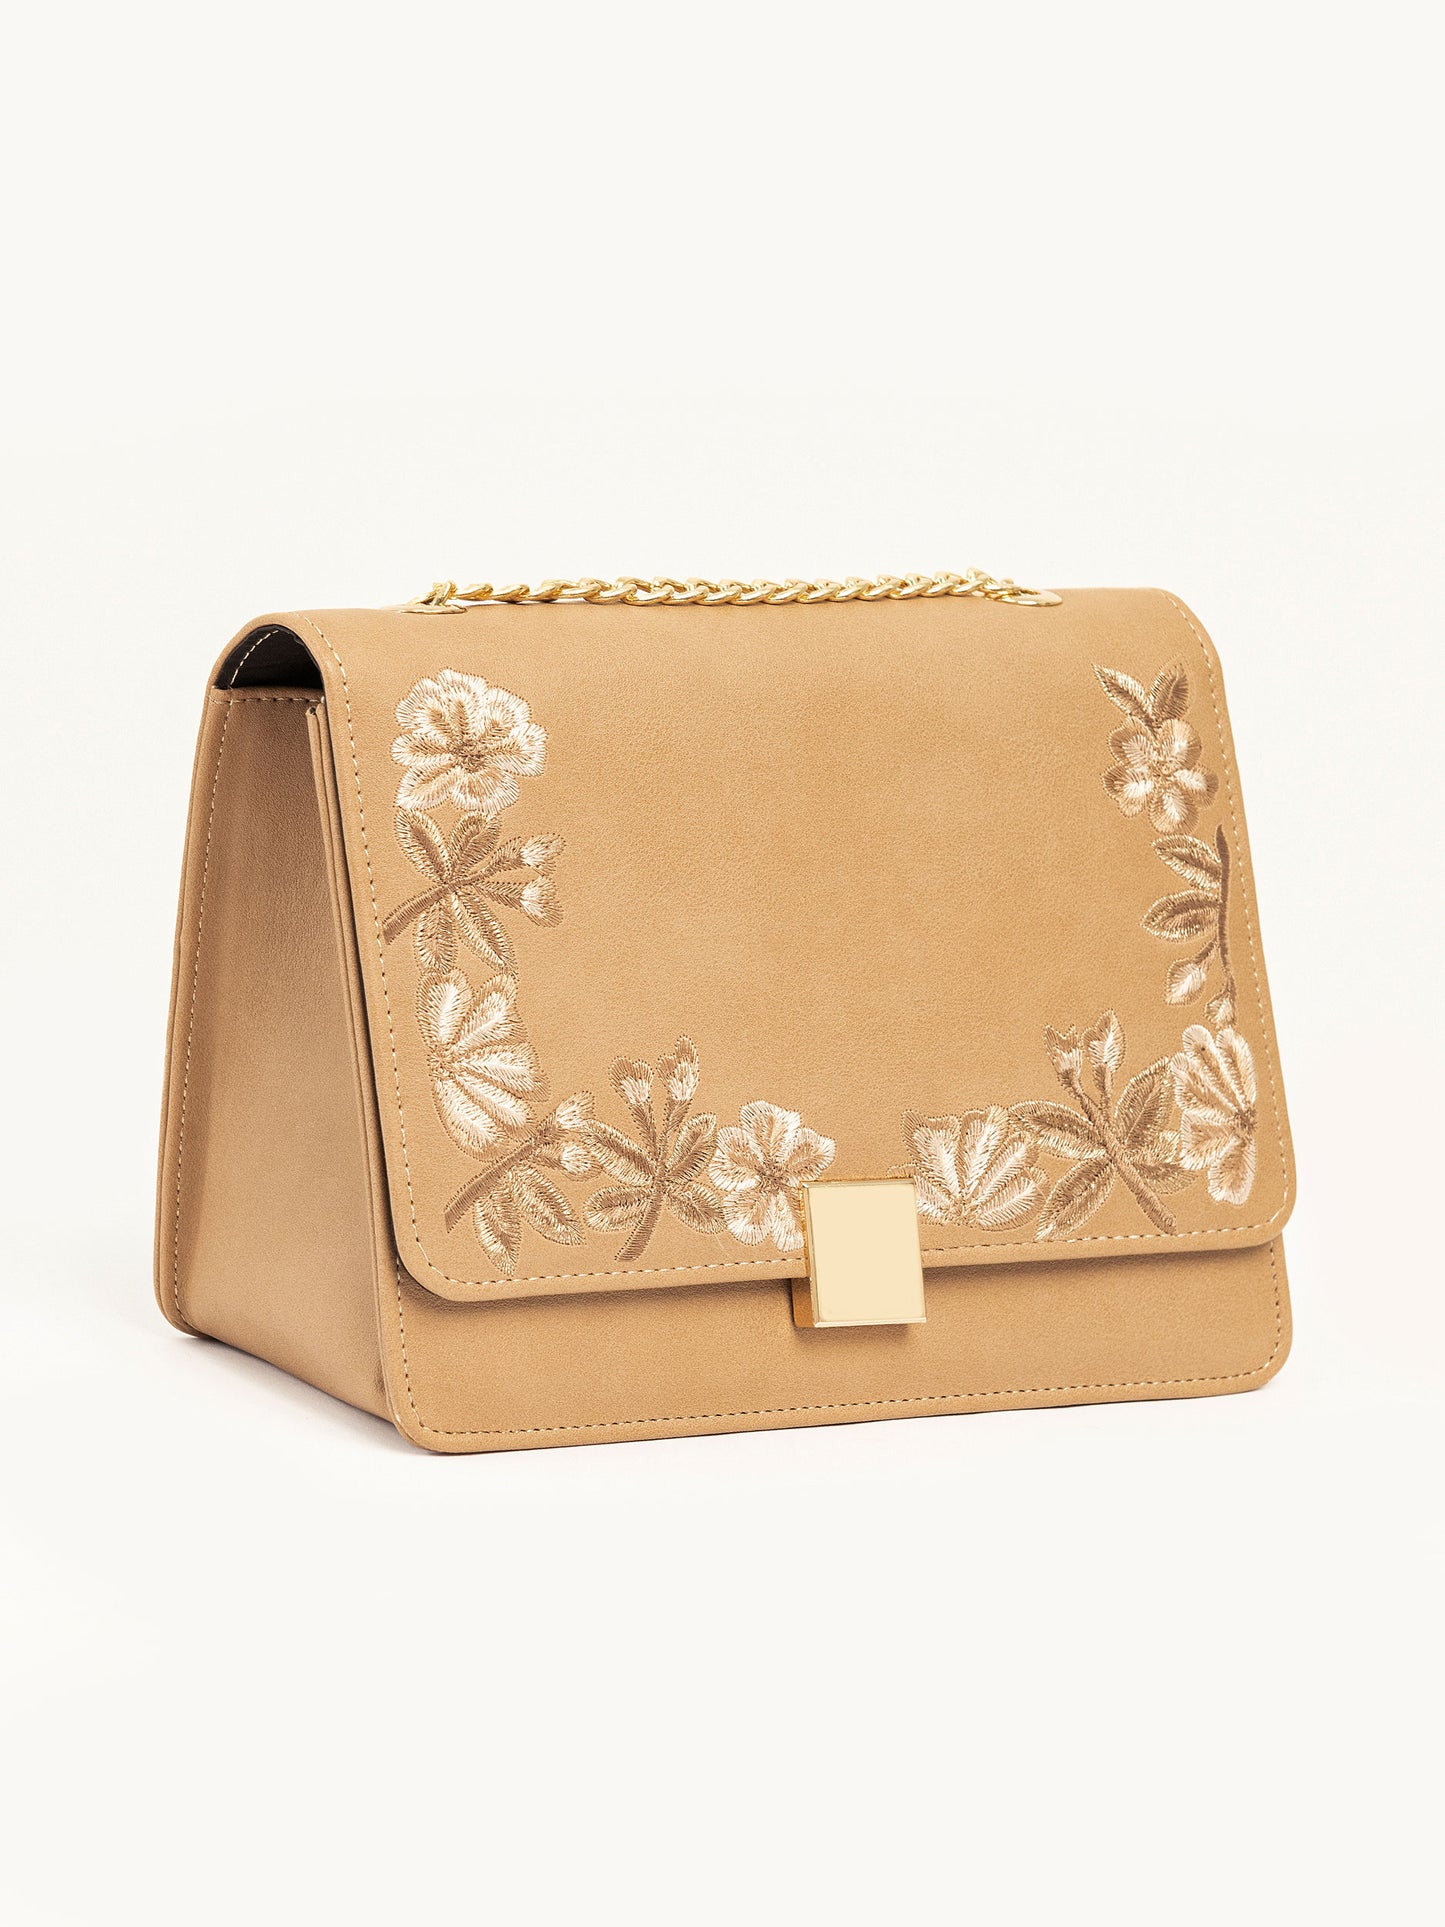 Floral Embroidered Handbag